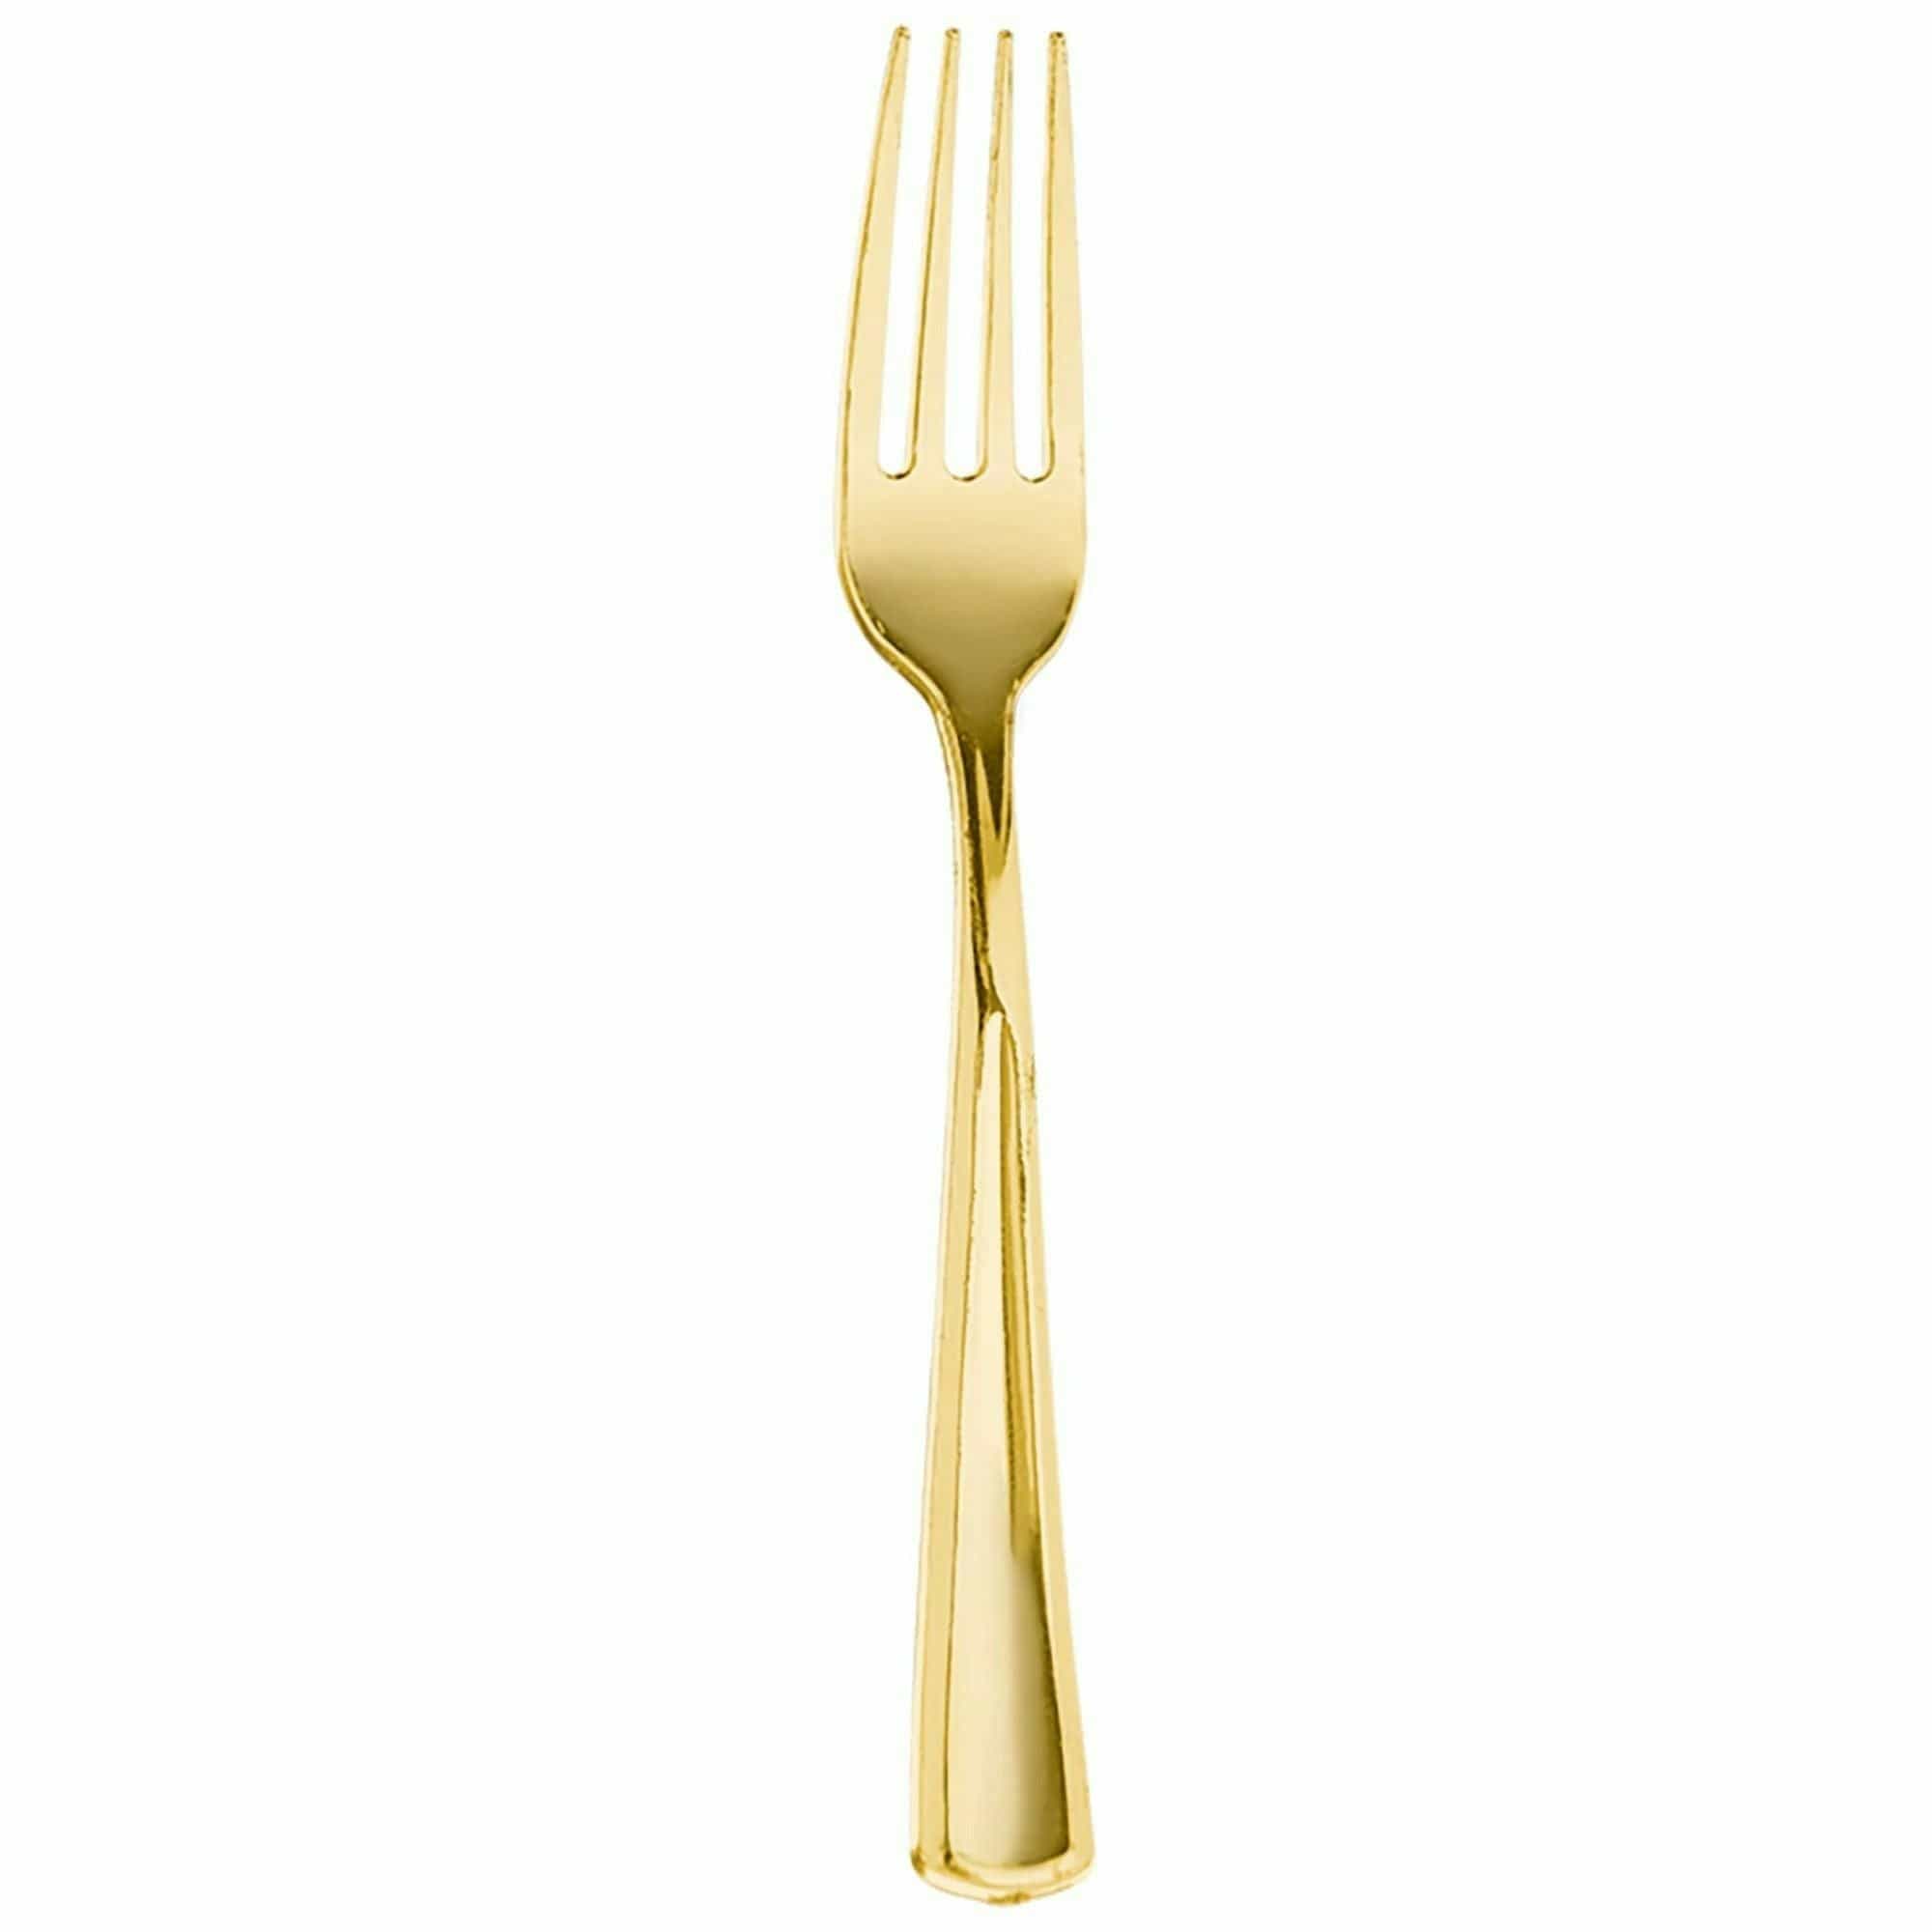 Amscan BASIC Premium Metallic Fork - Gold